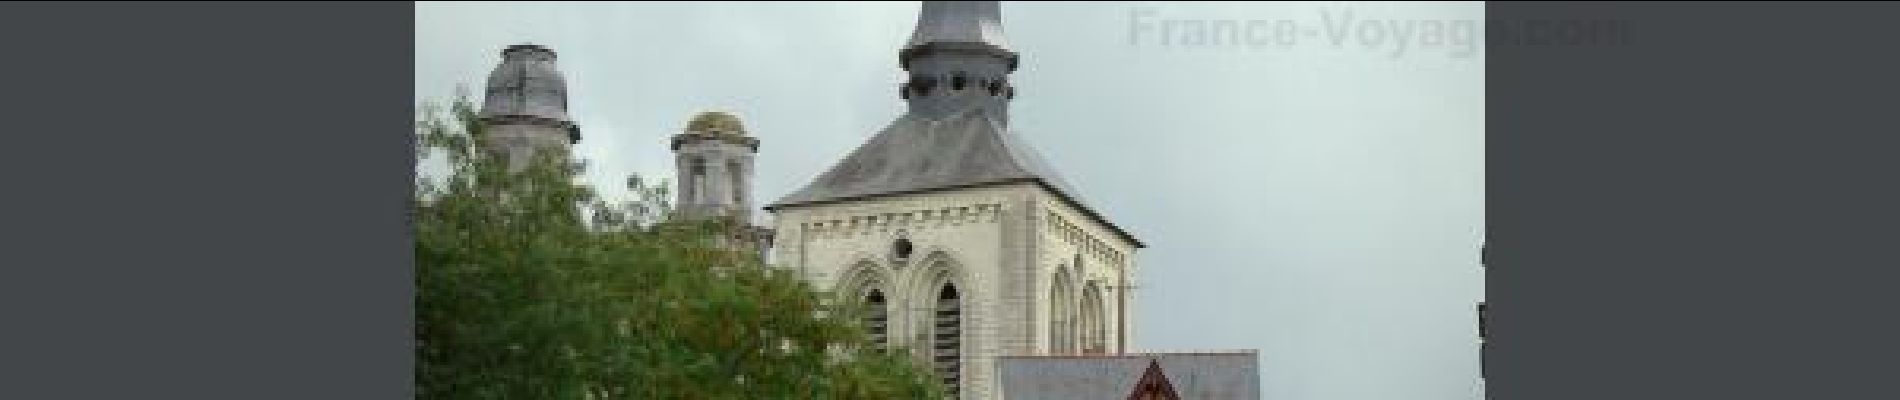 Point d'intérêt Saumur - St-Pierre - Photo